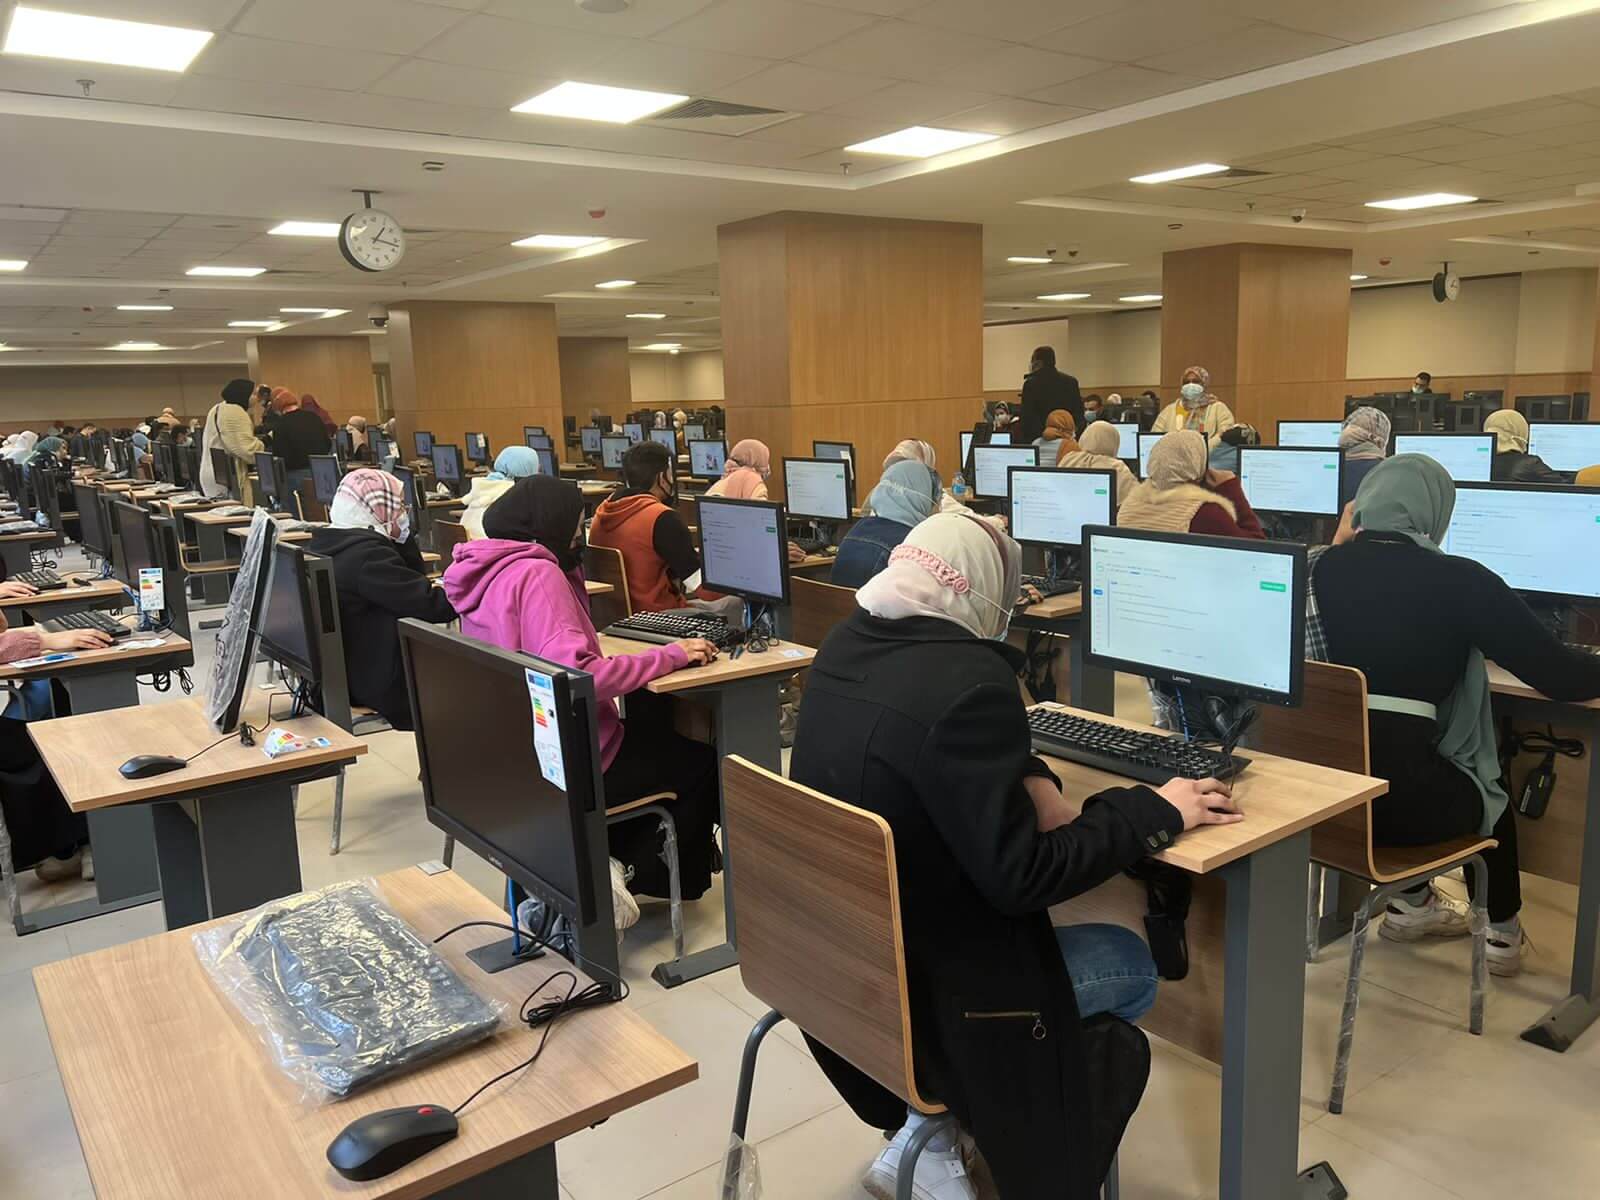 أداء الطلاب أثناء الاختبار الالكتروني باستخدام نظام كوركت